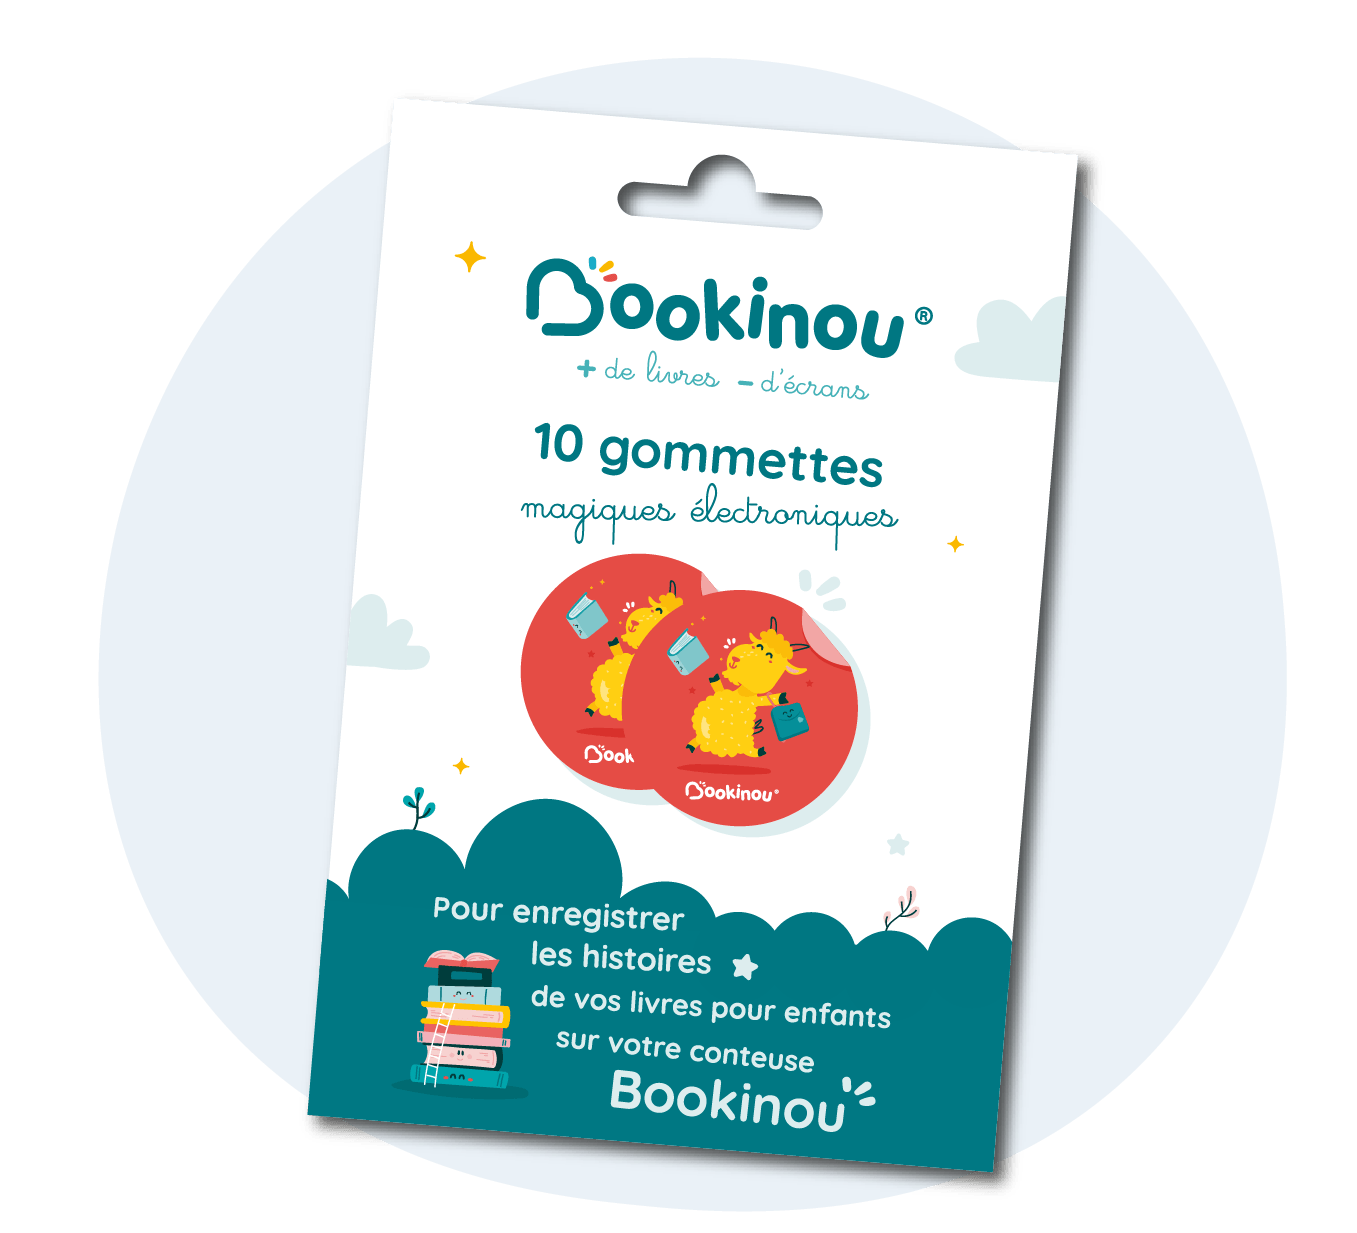 Lyon : Bookinou, start-up française la plus innovante de l'année